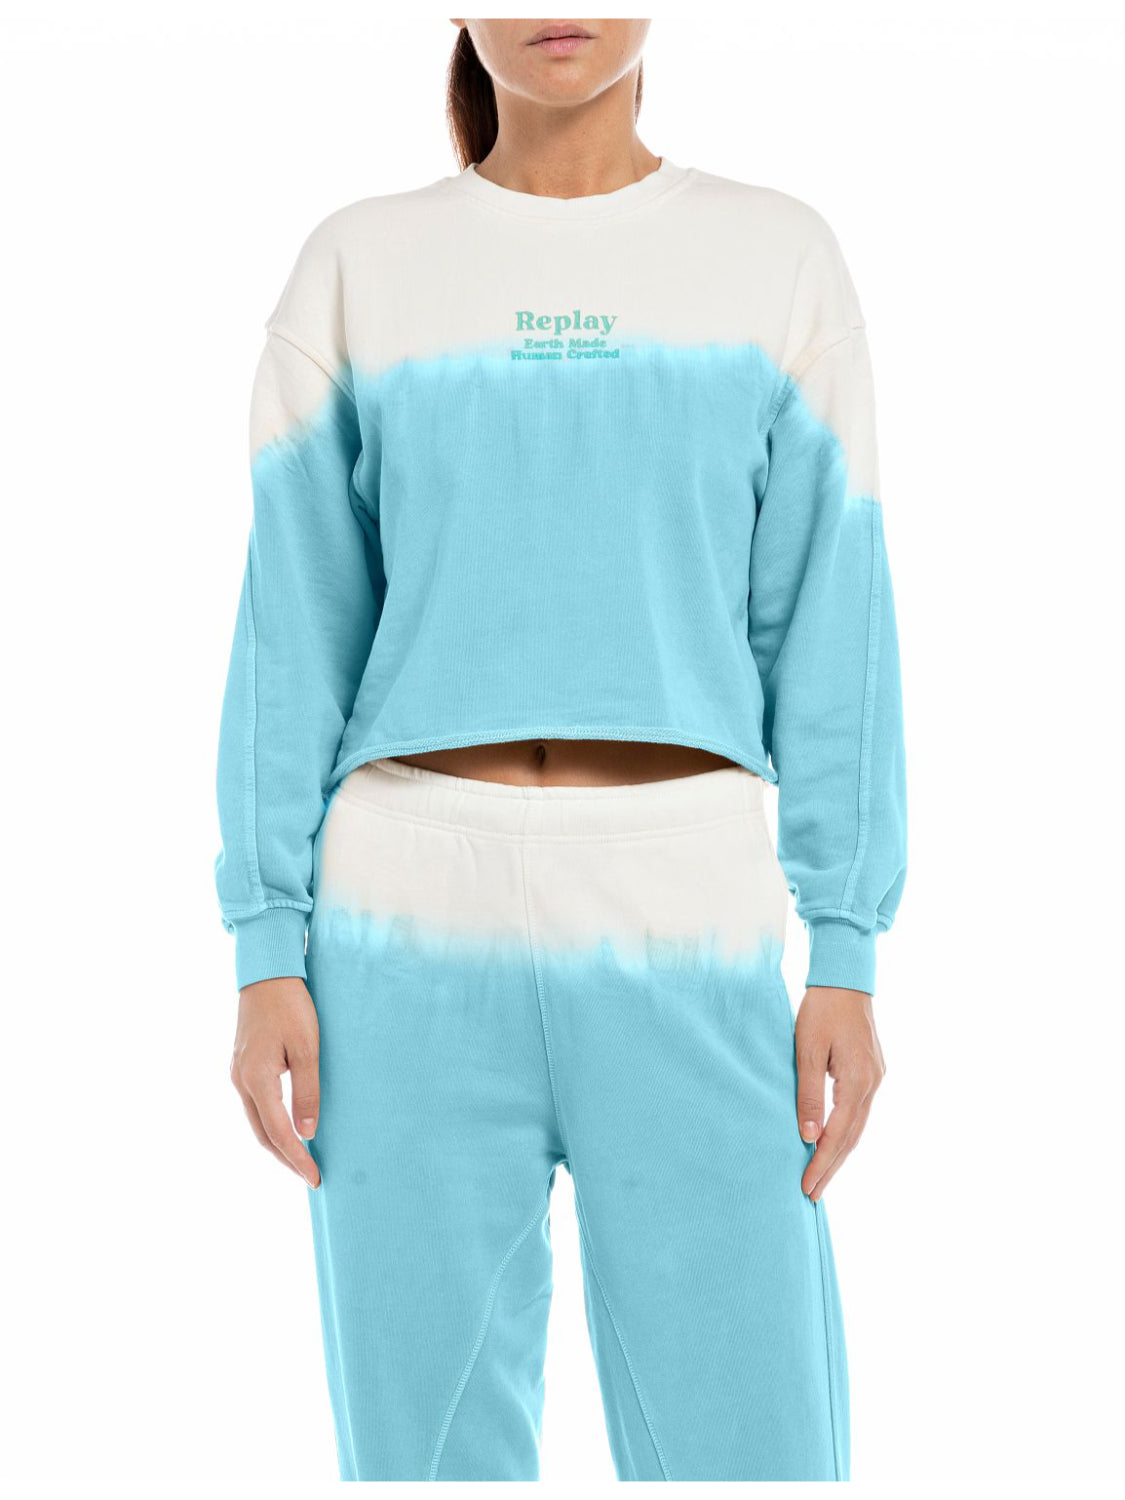 Cotton Fleece Sweatshirt